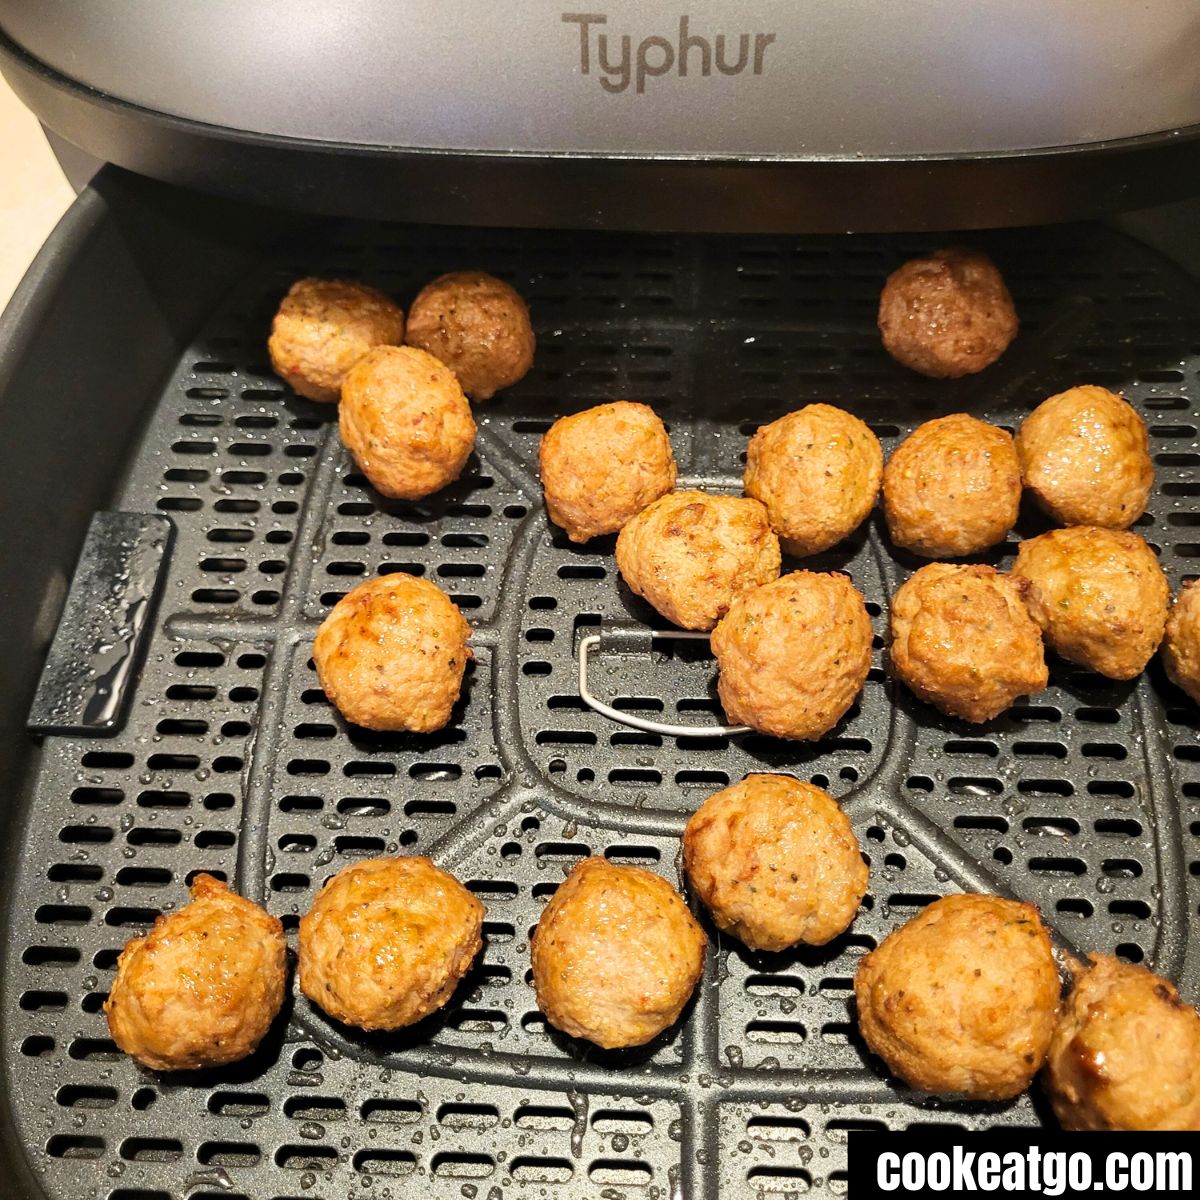 Kirkland meatballs half way thru cooking in Typhur Dome